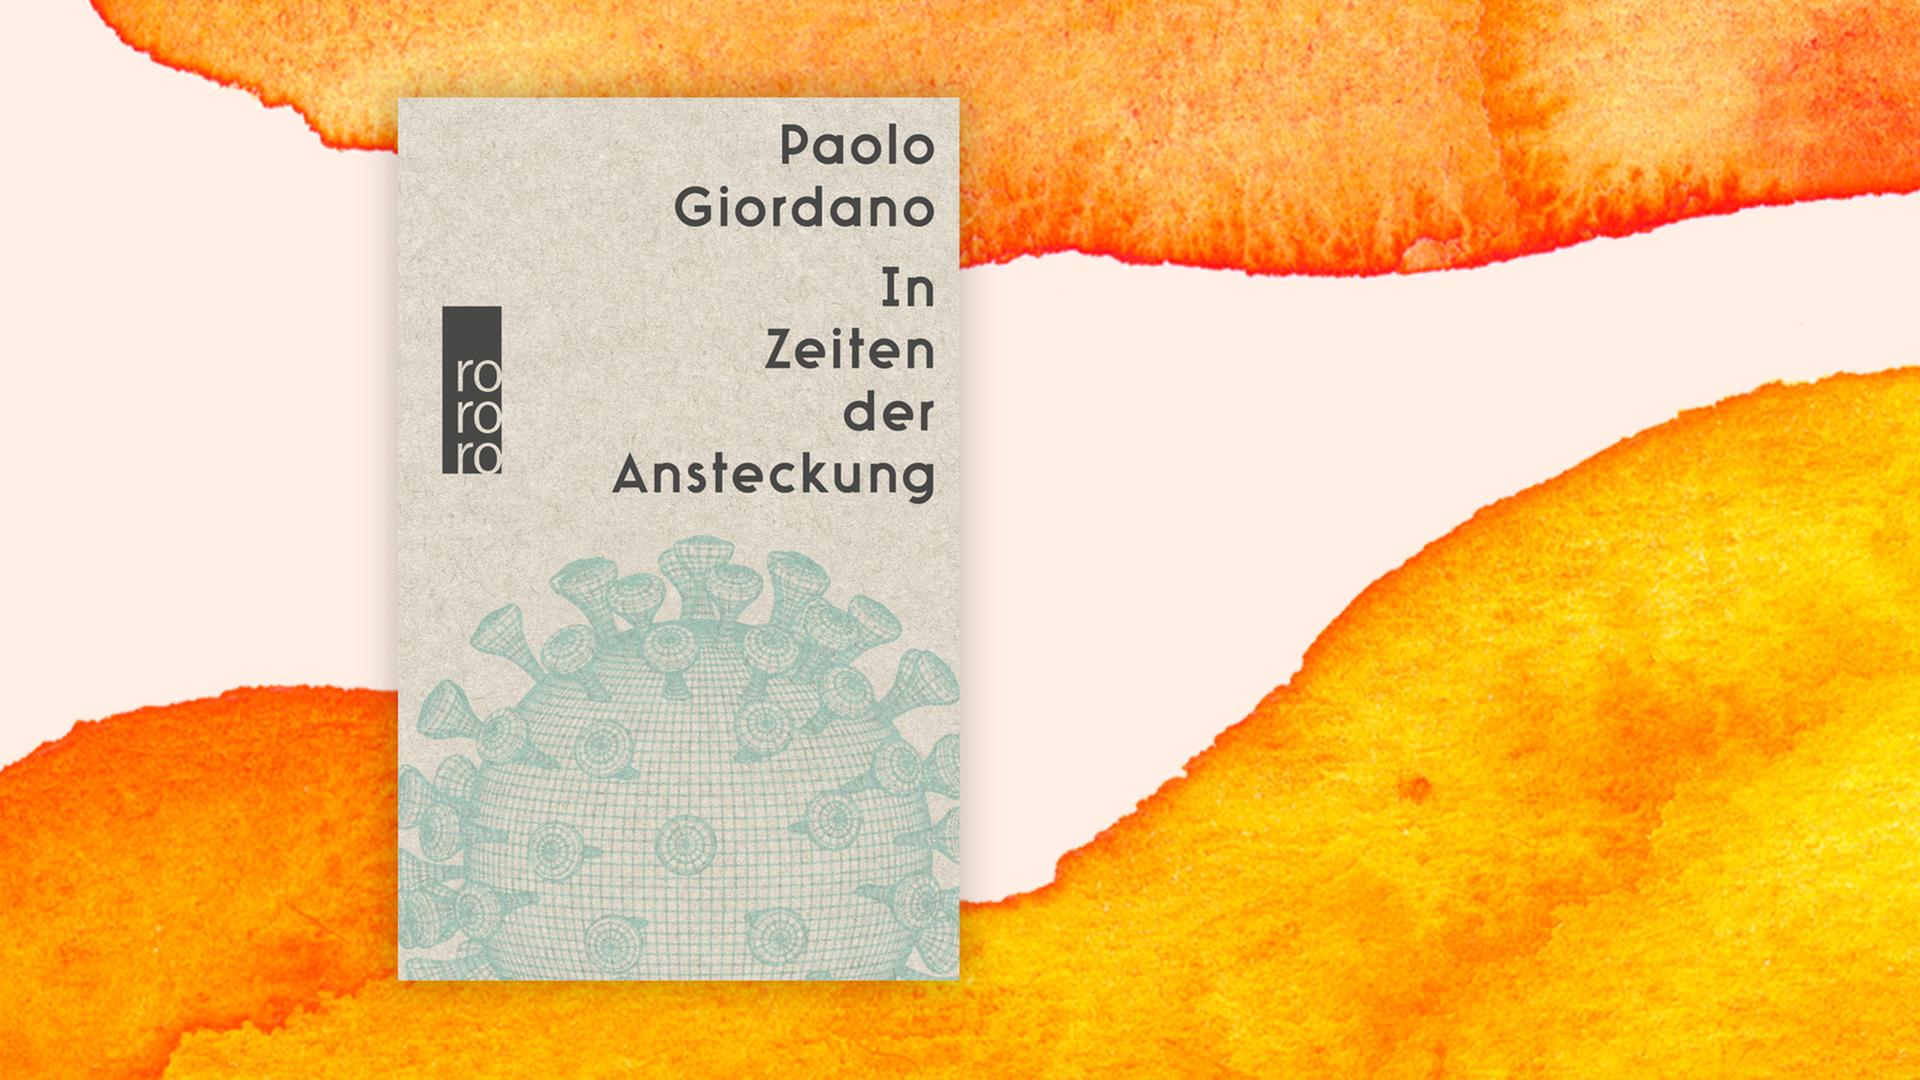 Buchcover zu Paolo Giordano: "In Zeiten der Ansteckung"